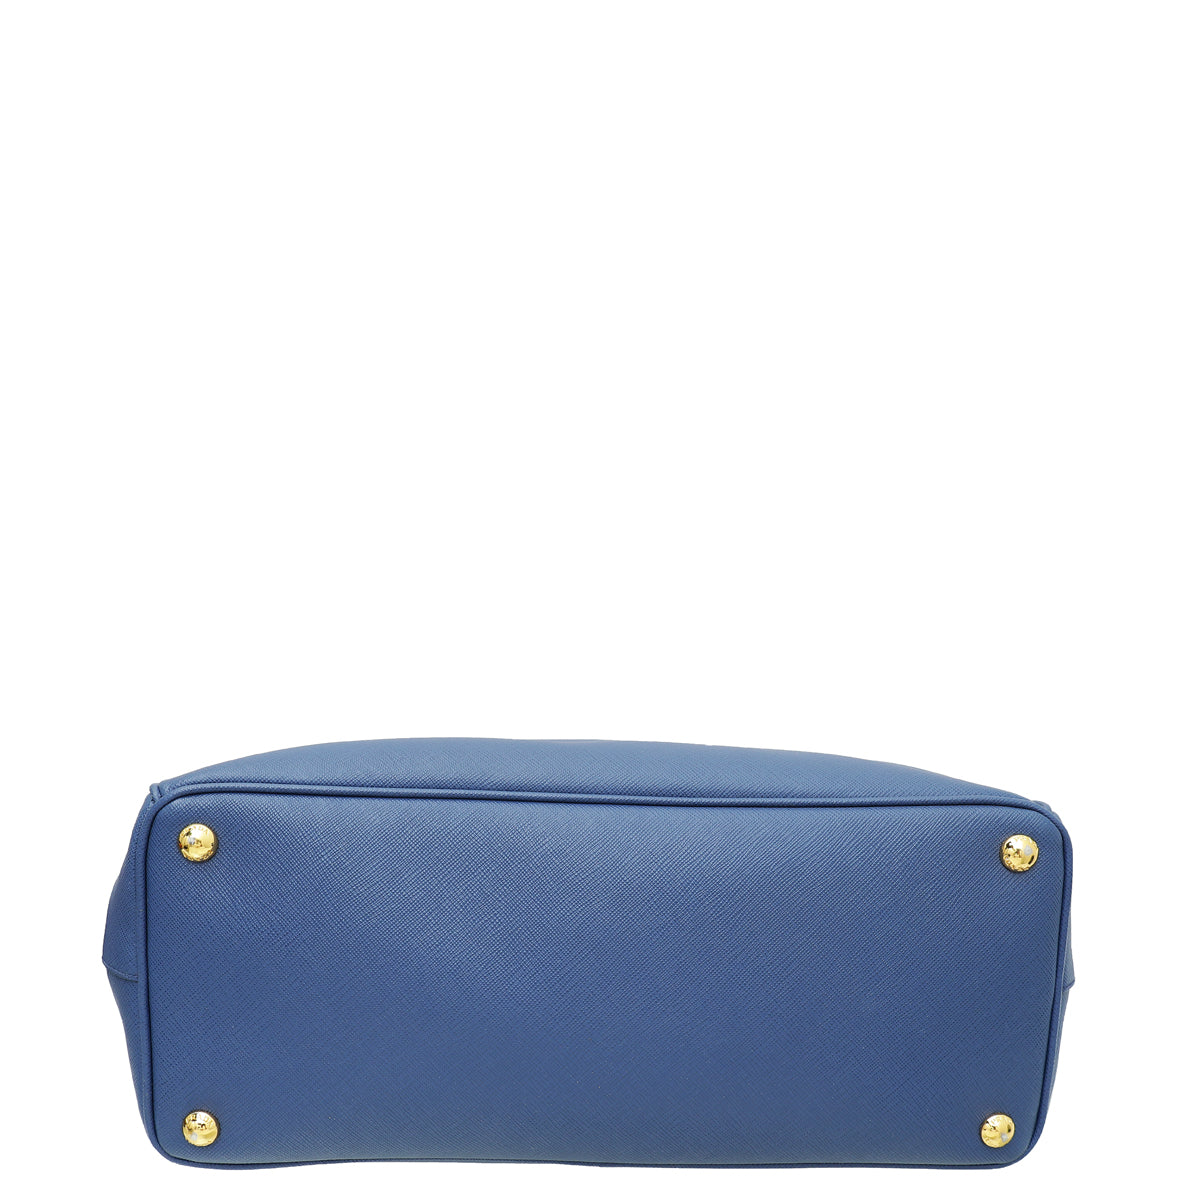 Prada Blue Lux Galleria Large Bag